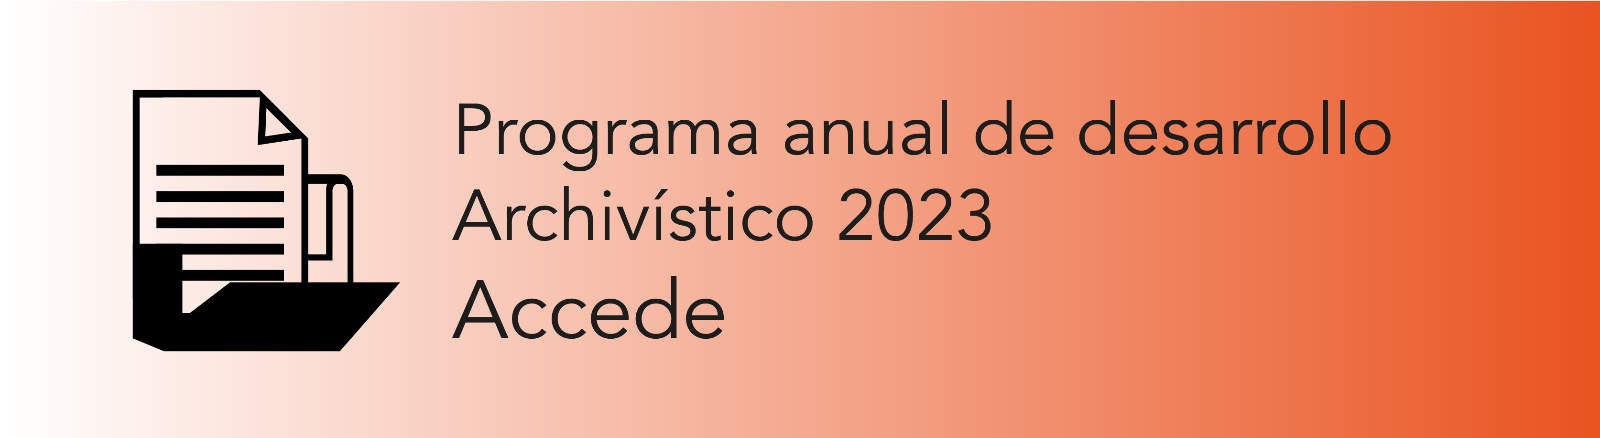 Imagen que permite conocer el Programa Anual de Desarrollo Archivístico 2023